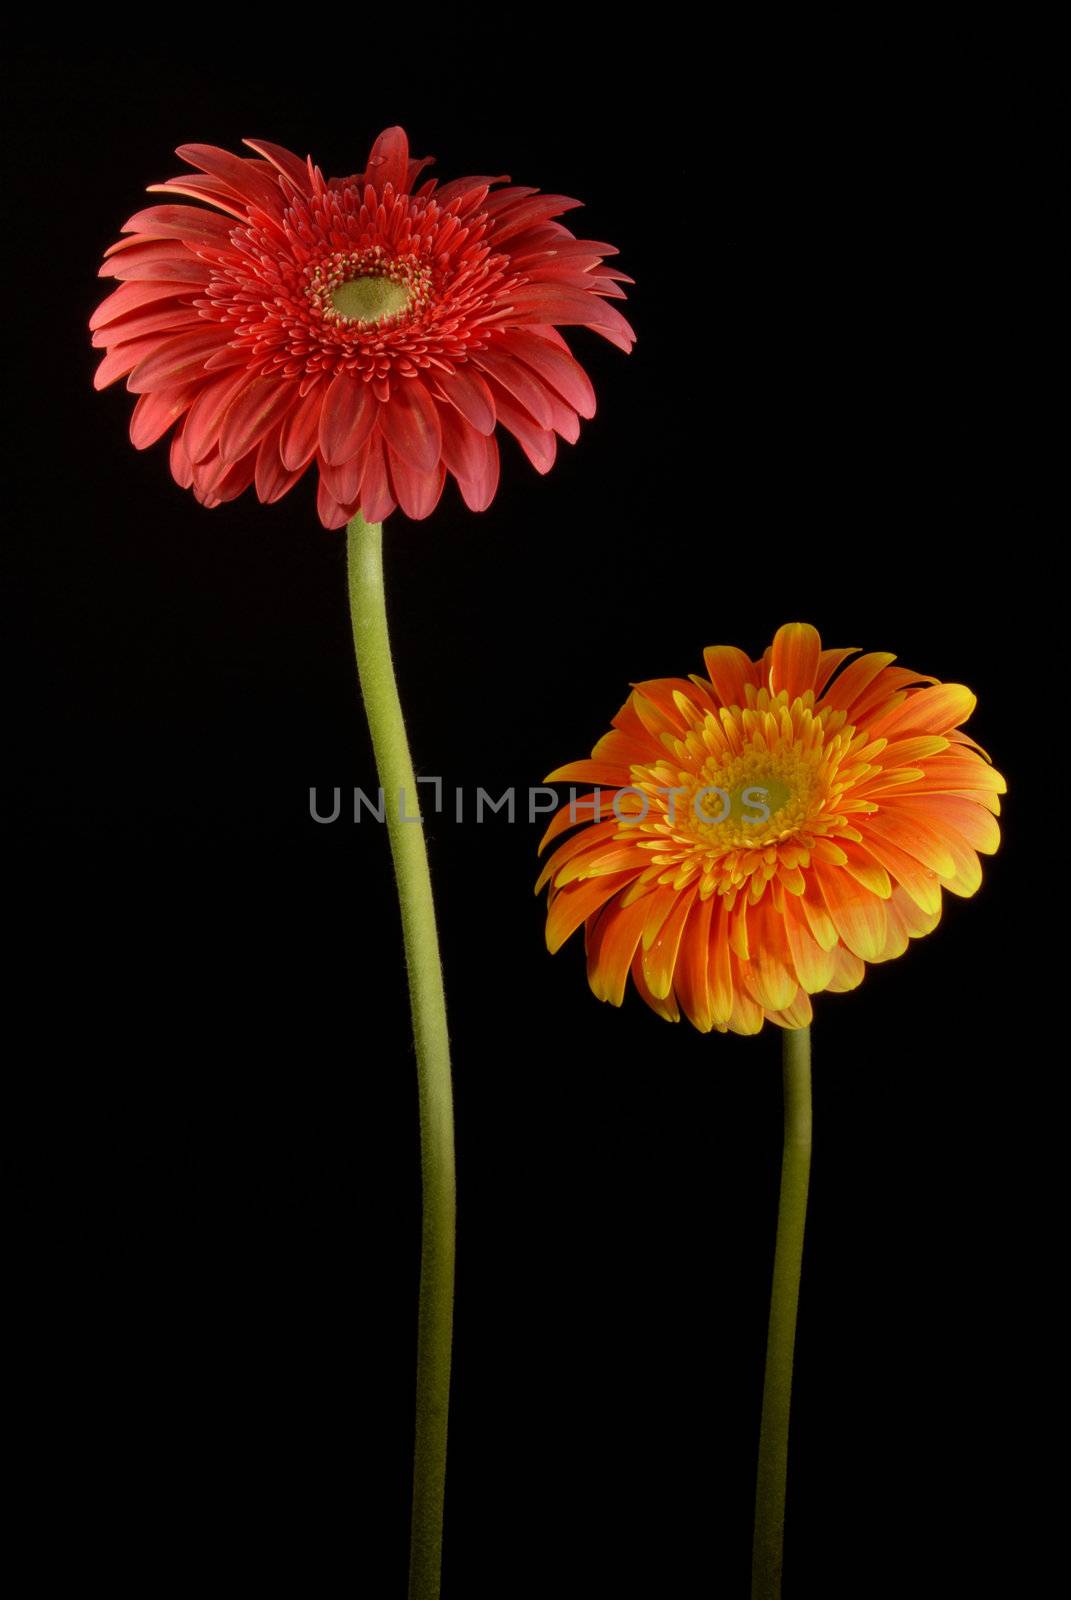 Red and Orange gerbera flowers by cienpies